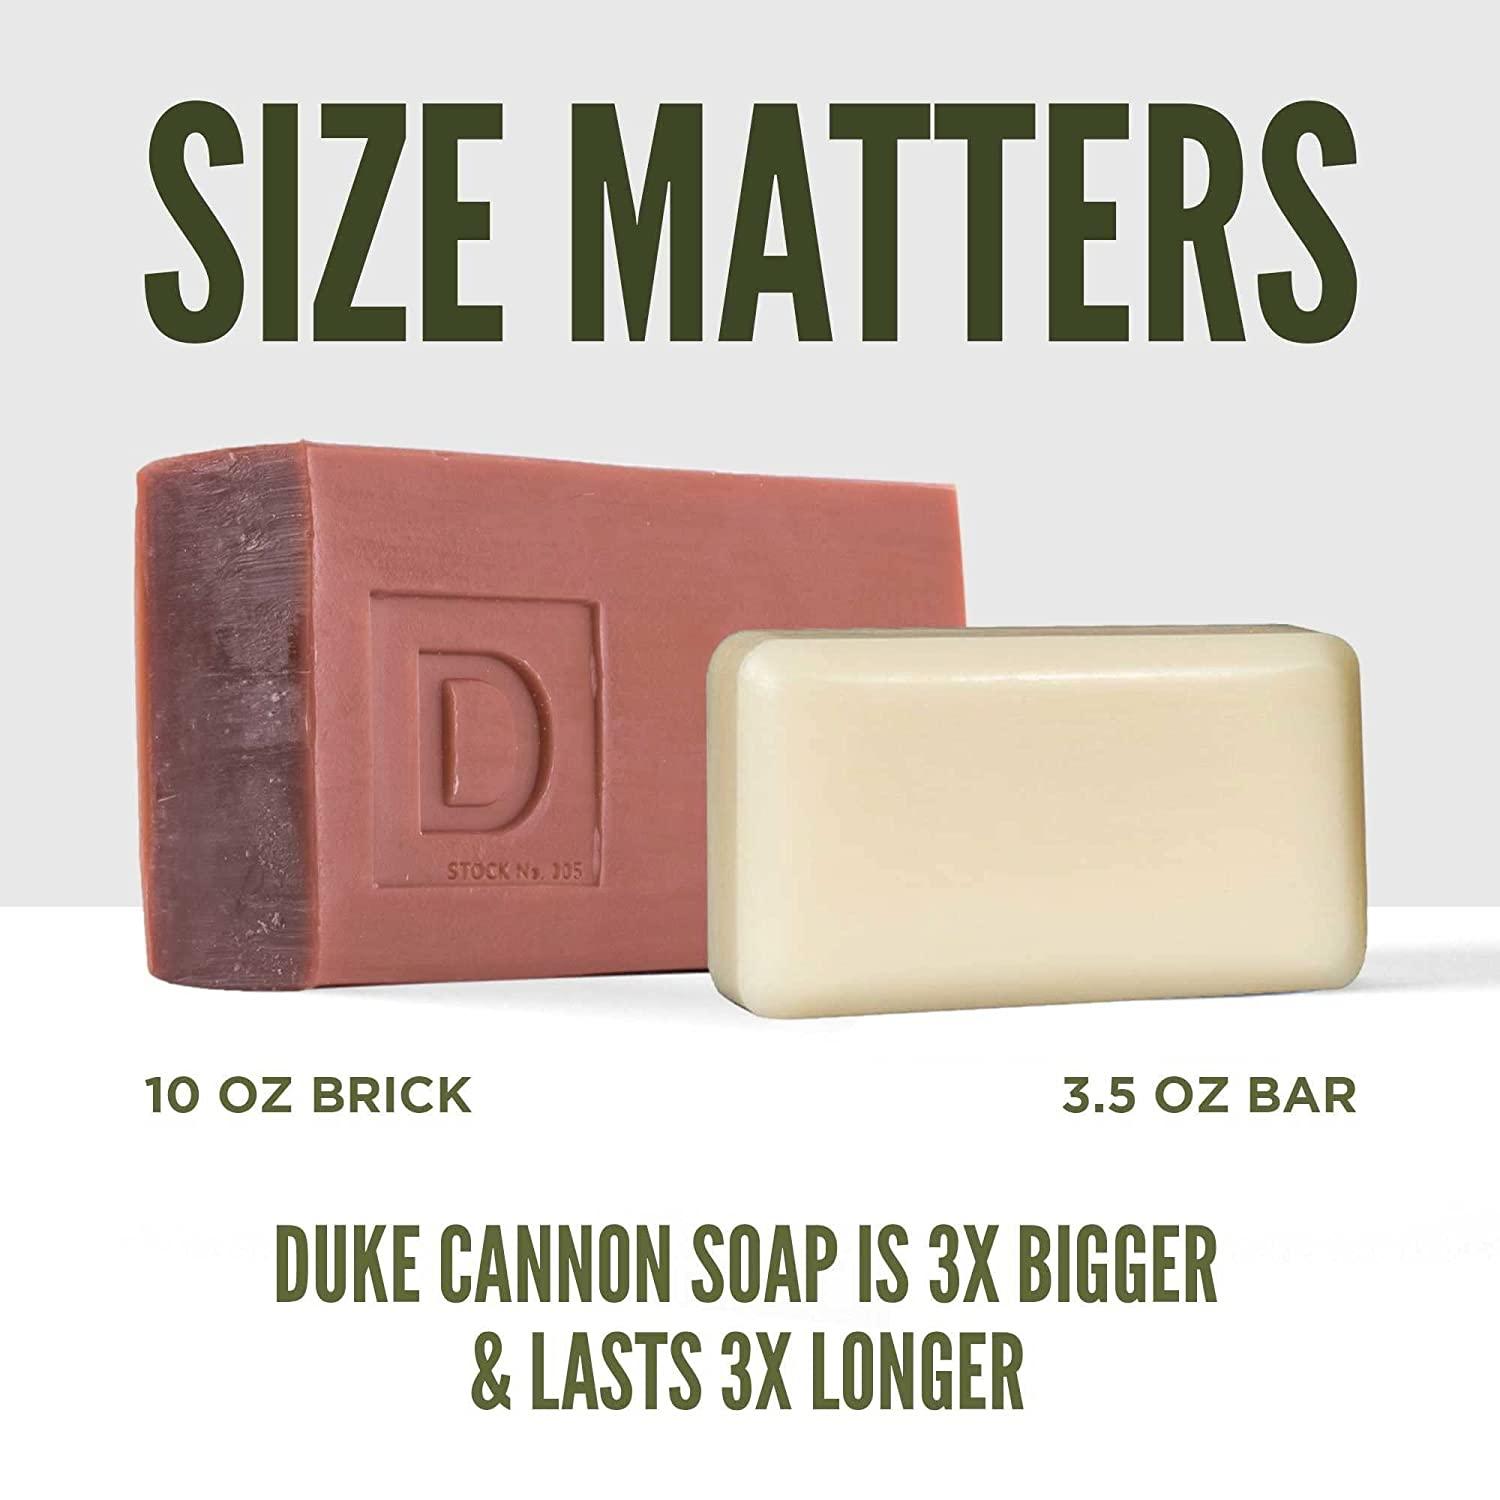 Duke Cannon Leaf and Leather Bar Soap